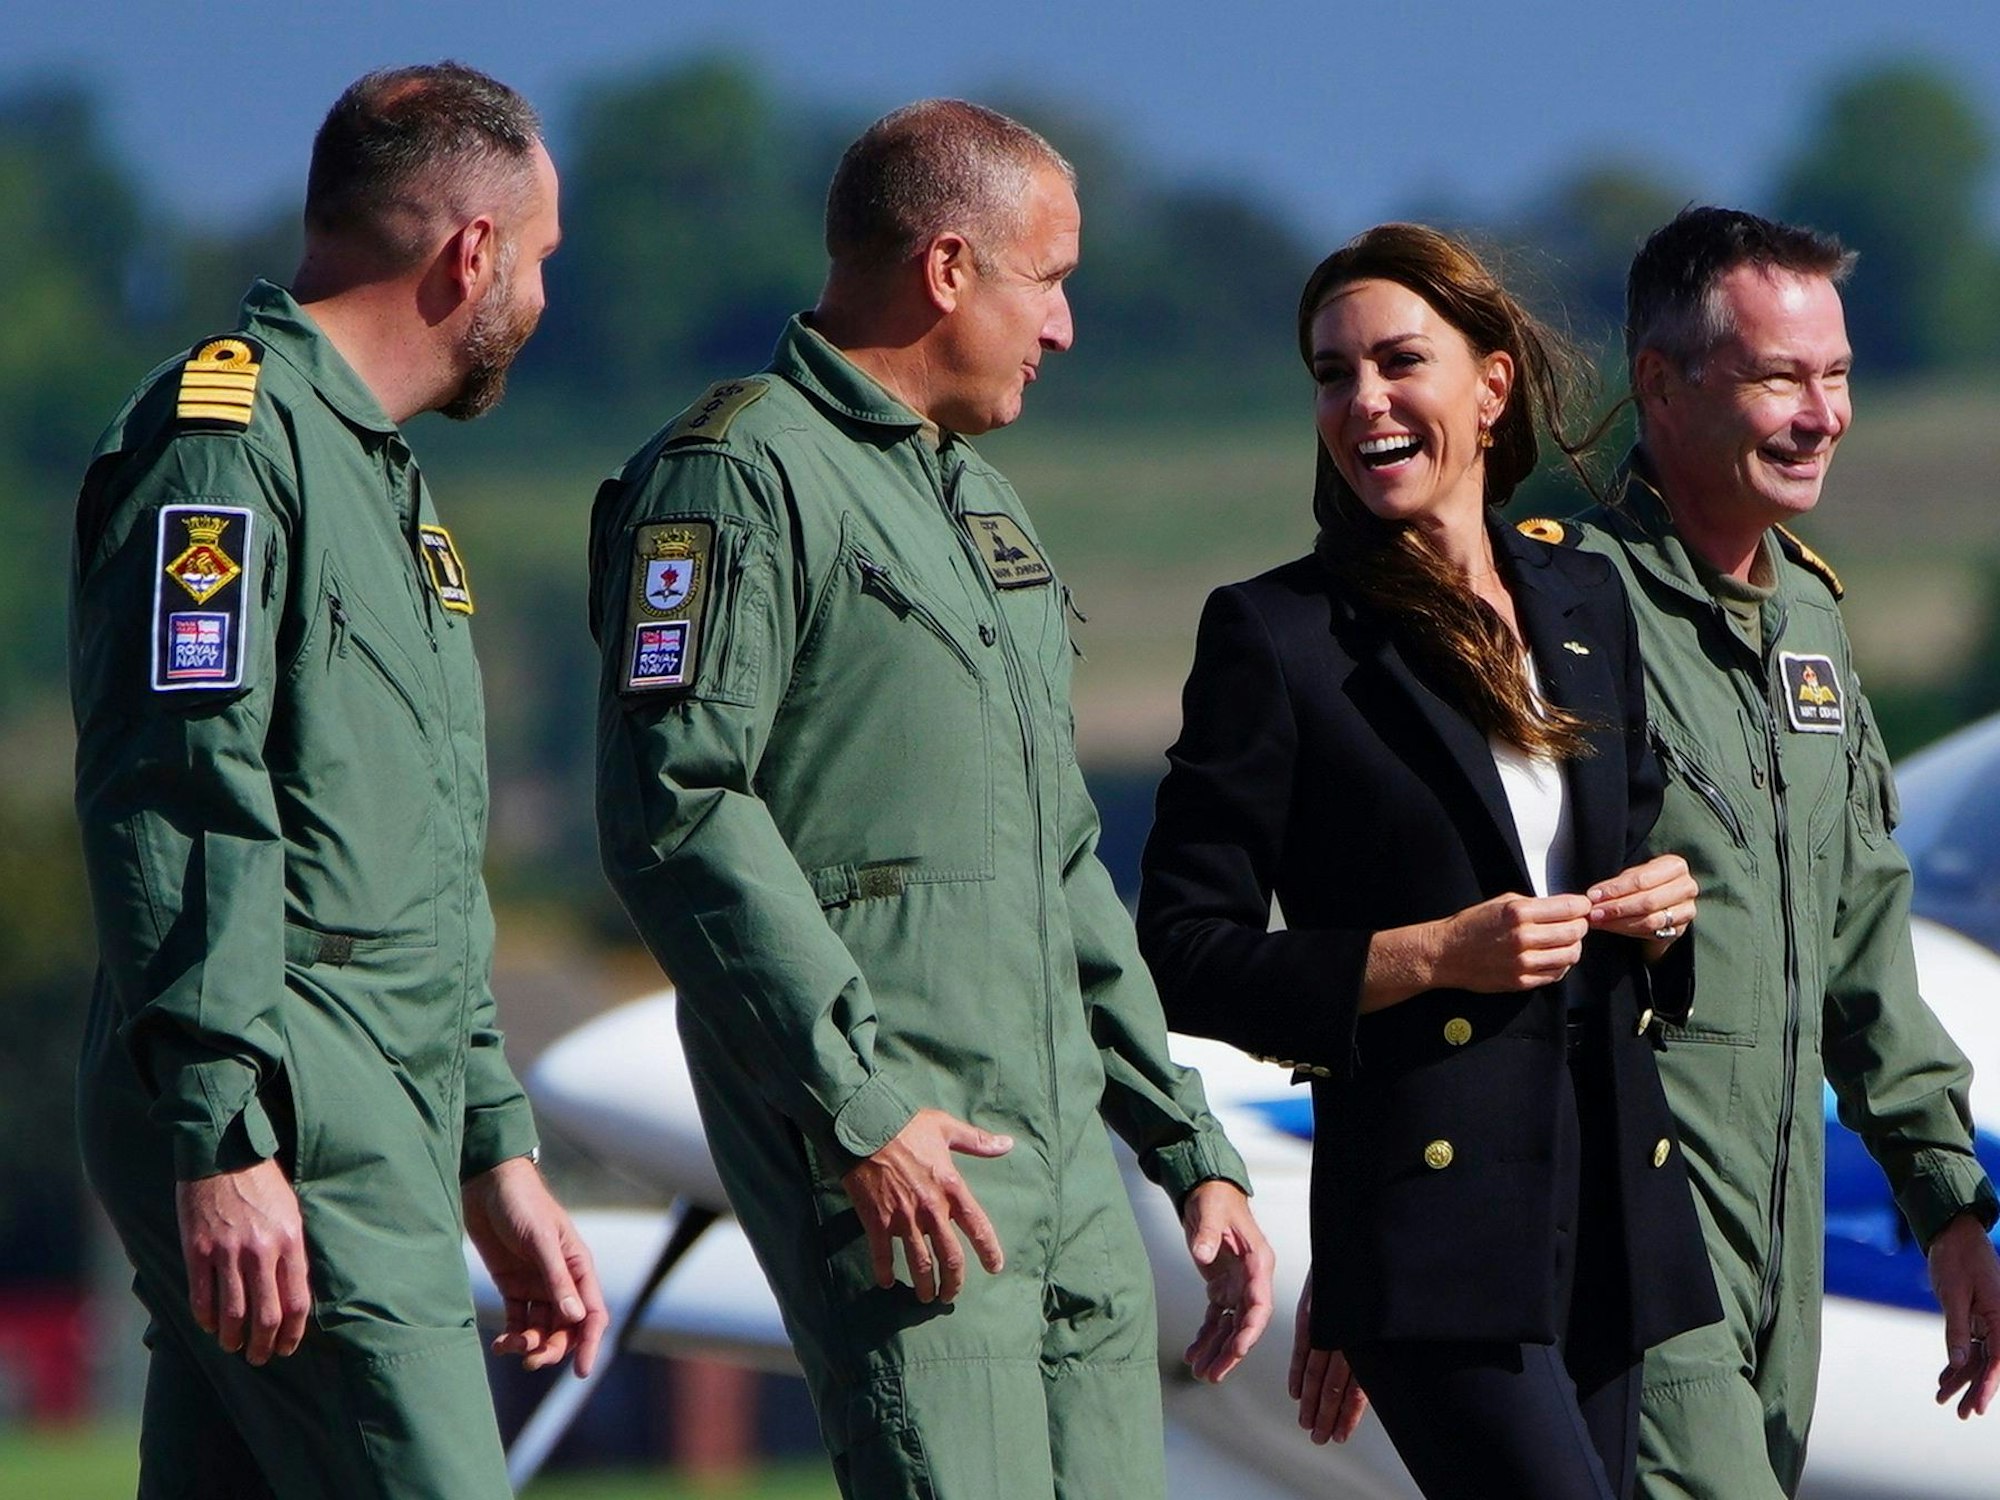 Prinzessin Kate, zweite von rechts, lächelt bei einem Besuch der Royal Naval Air Station (RNAS) Yeovilton.